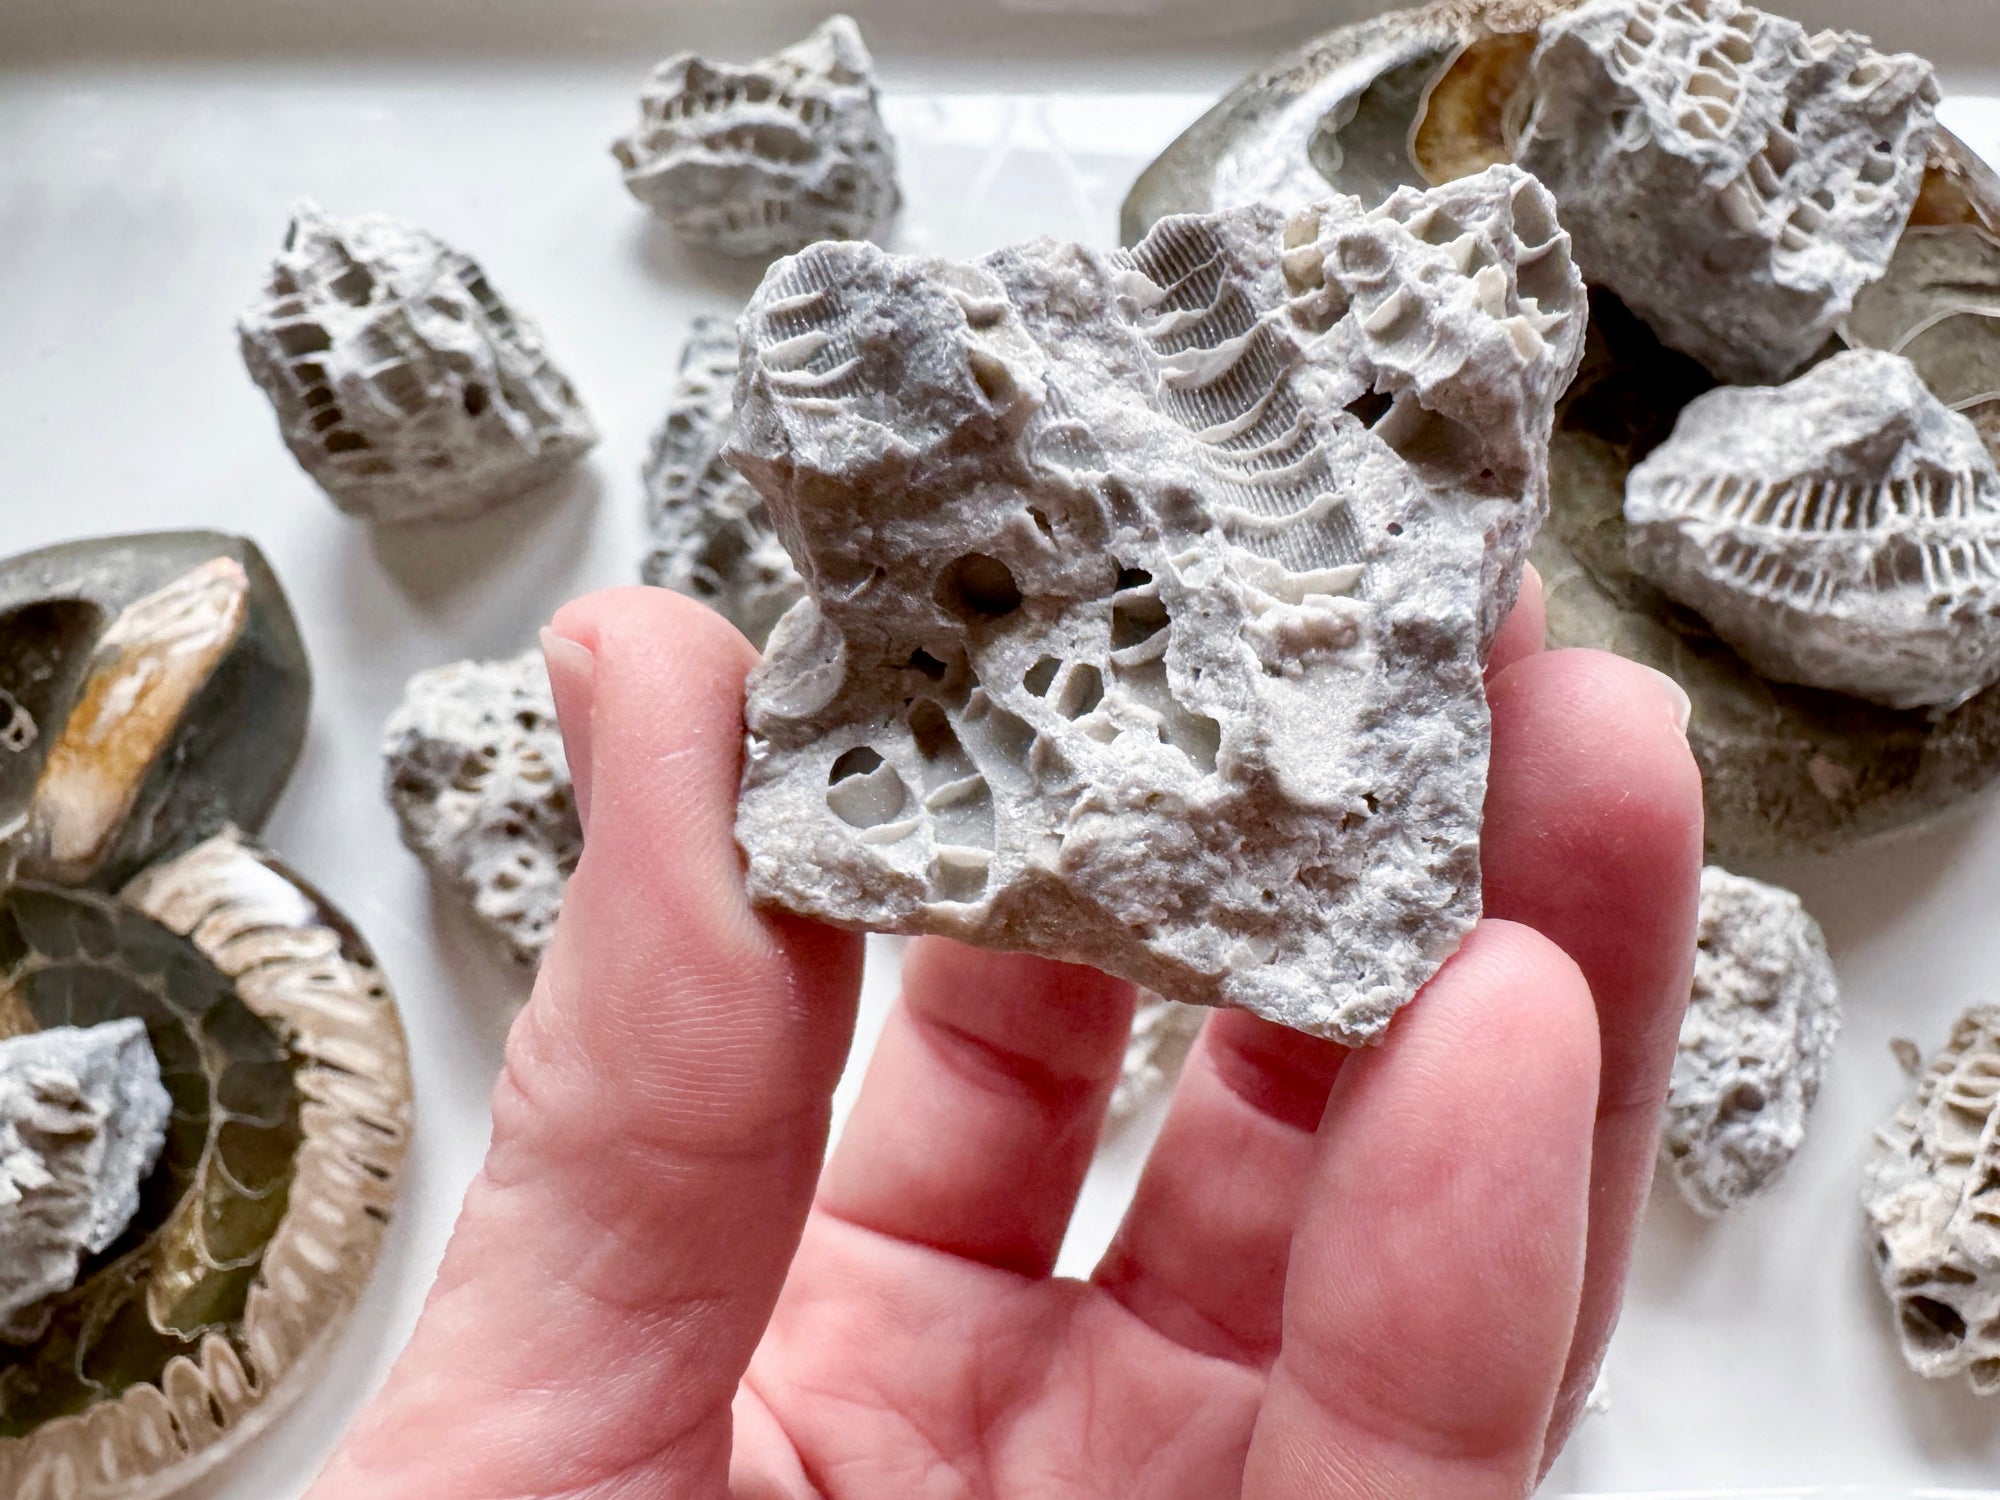 Druzy Fossil Coral || Clay Center, Ohio